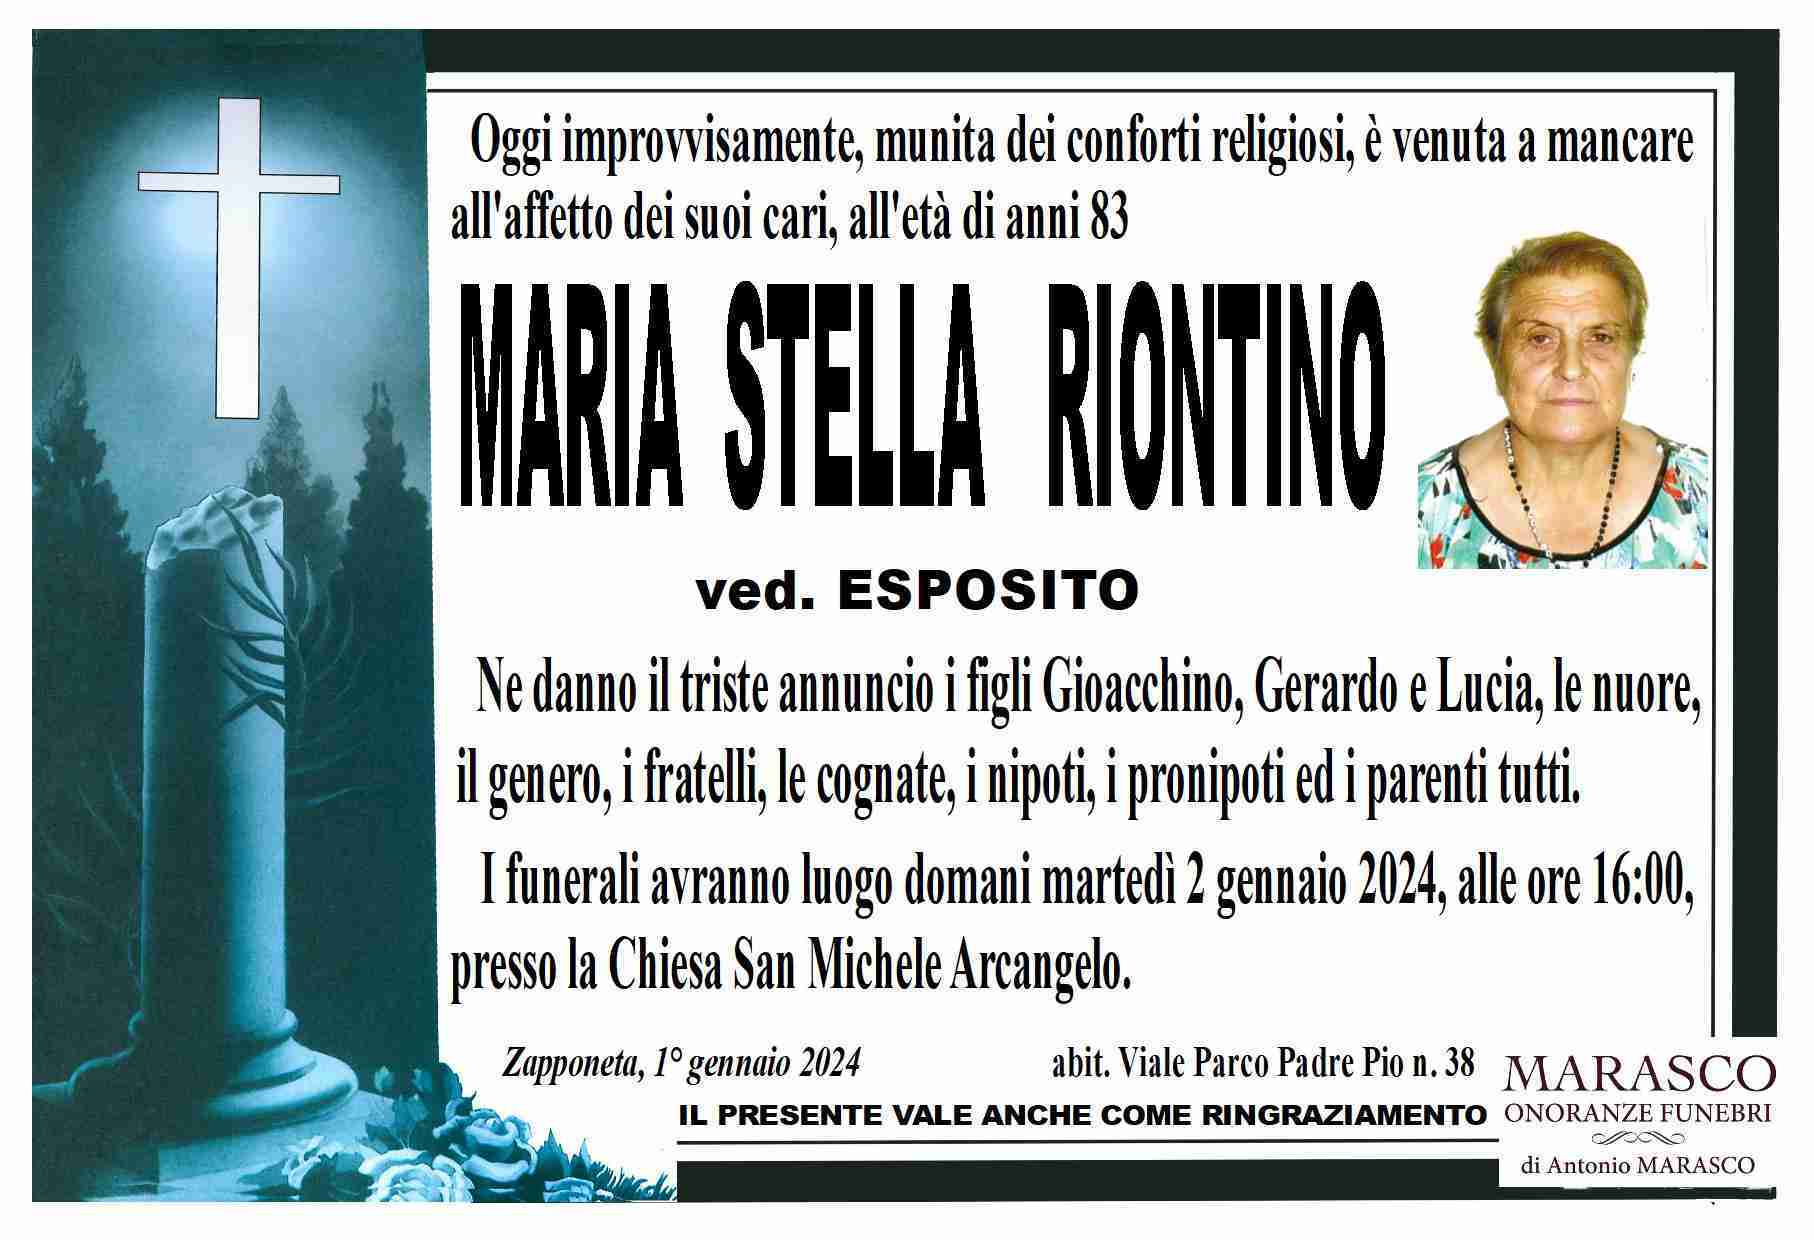 Maria Stella Riontino